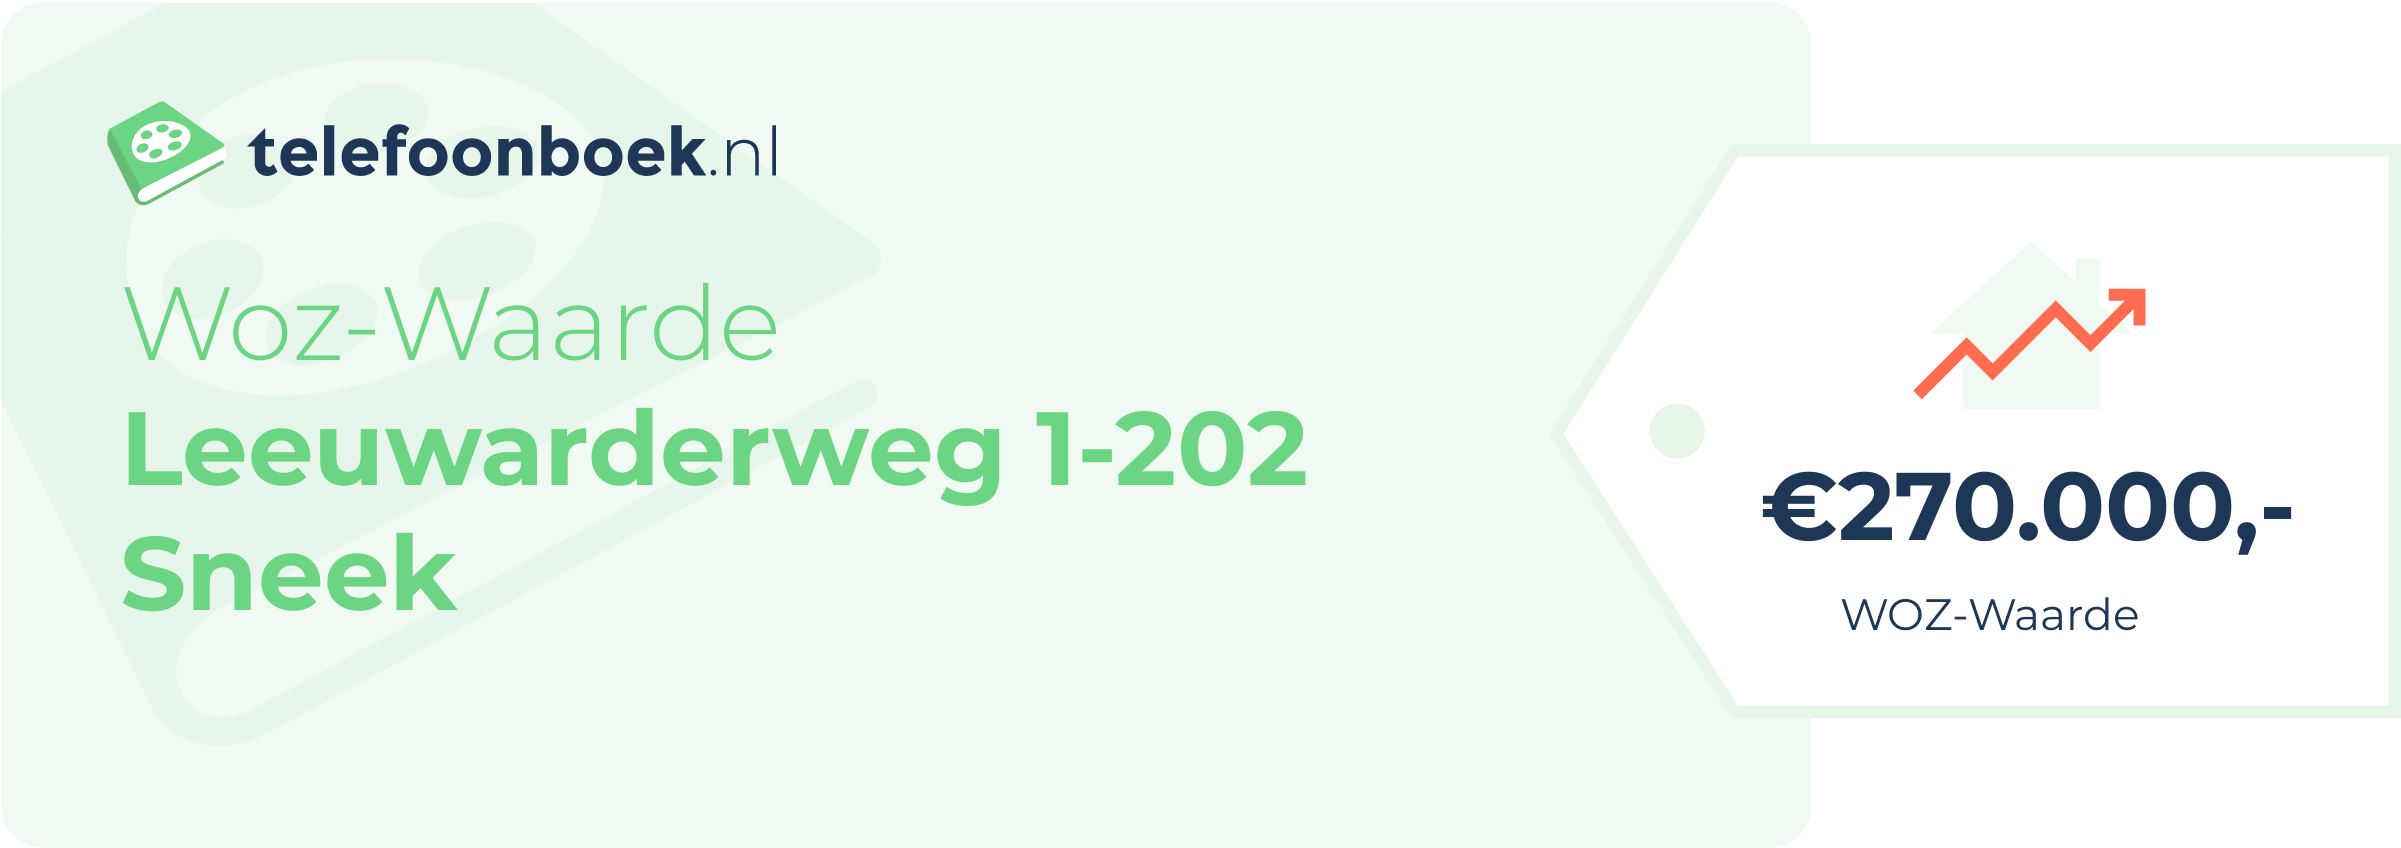 WOZ-waarde Leeuwarderweg 1-202 Sneek